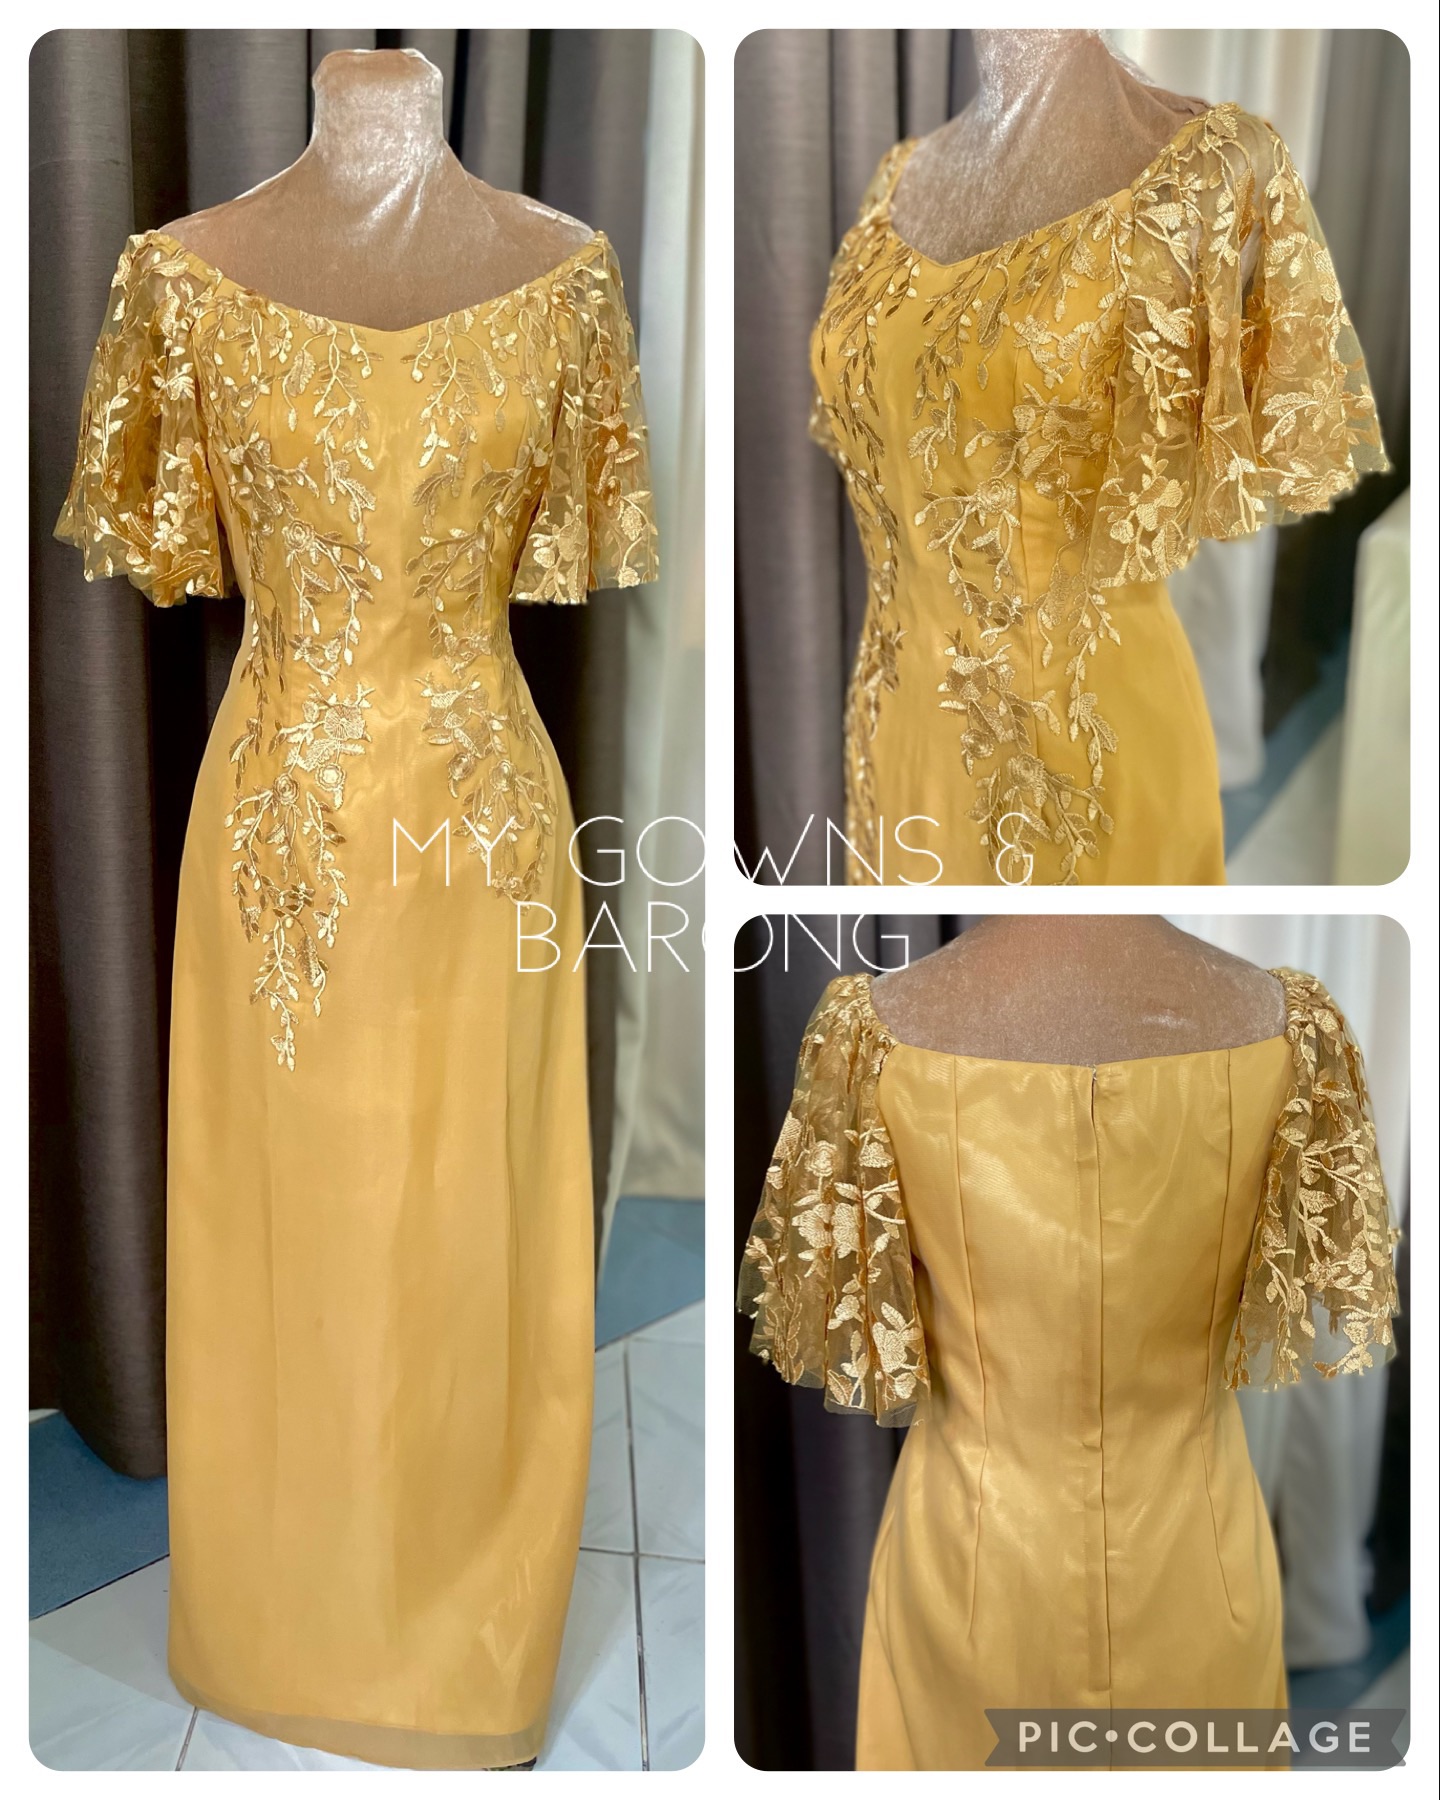 Lovely Gold Dress - Sequin Dress - Maxi Dress - $89.00 - Lulus